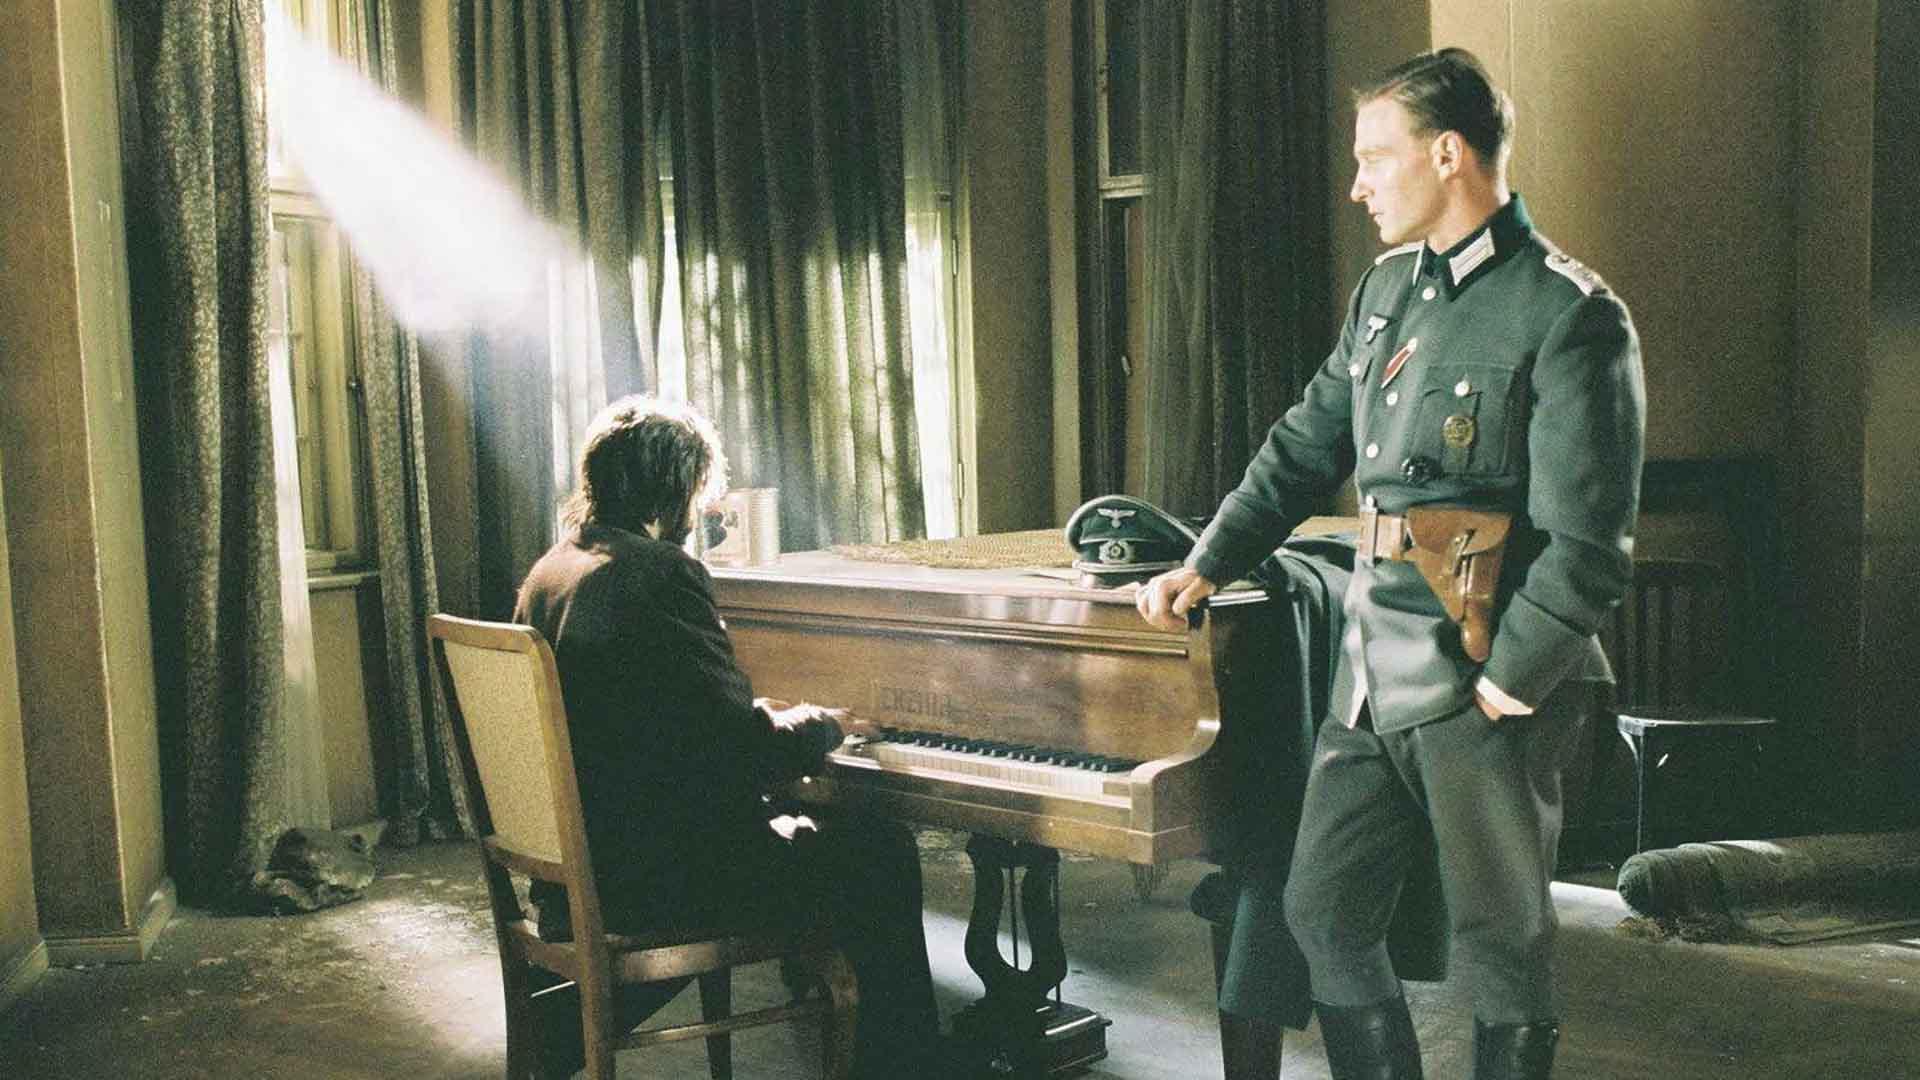 ولادگ و هوزنفلد در نمایی از فیلم پیانیست